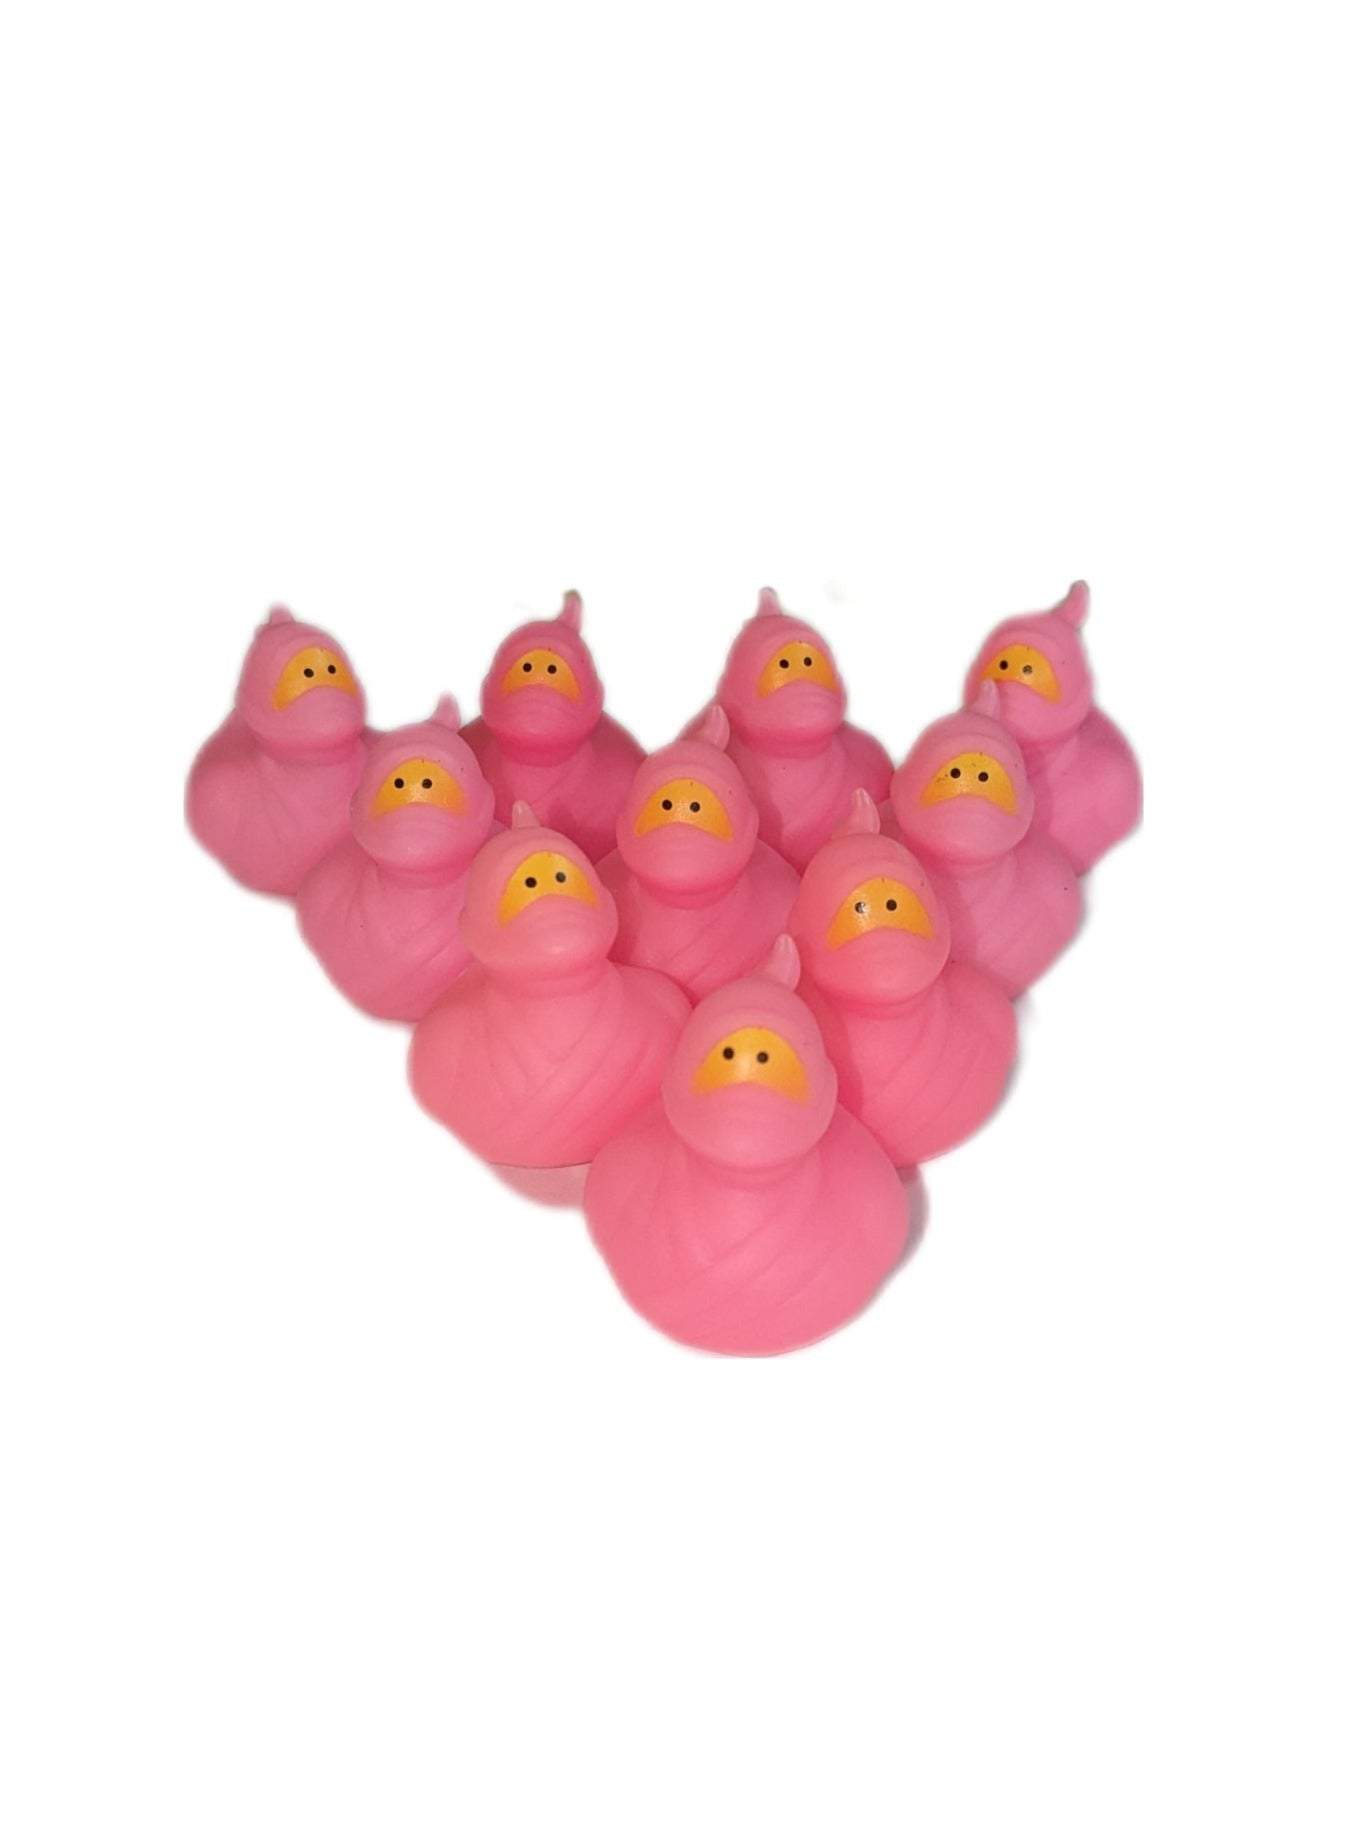 10 Pink Ninjas- 2" Rubber Ducks